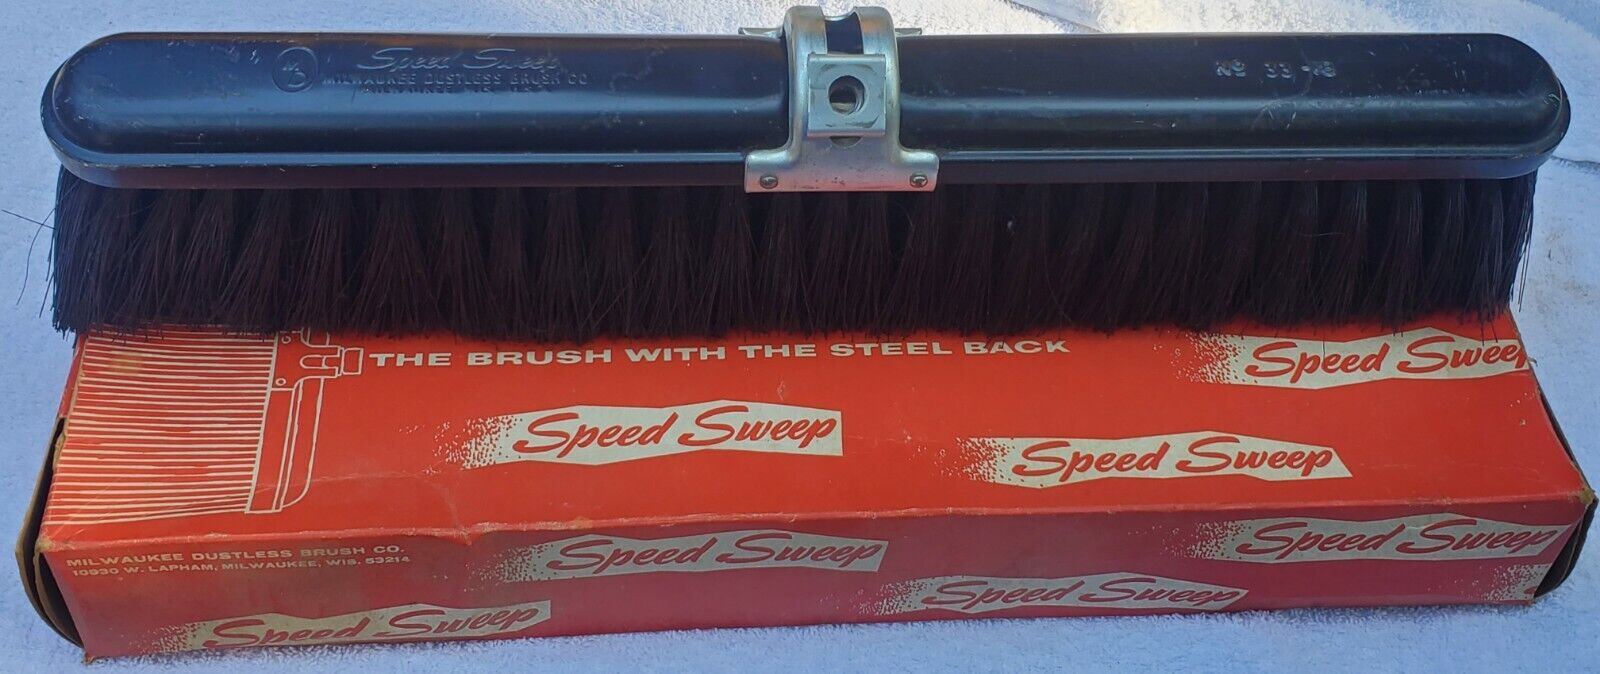 Vtg Milwaukee Speed Sweep Dustless Brush No 33-18 Steelback Wood Shop Broom Tool